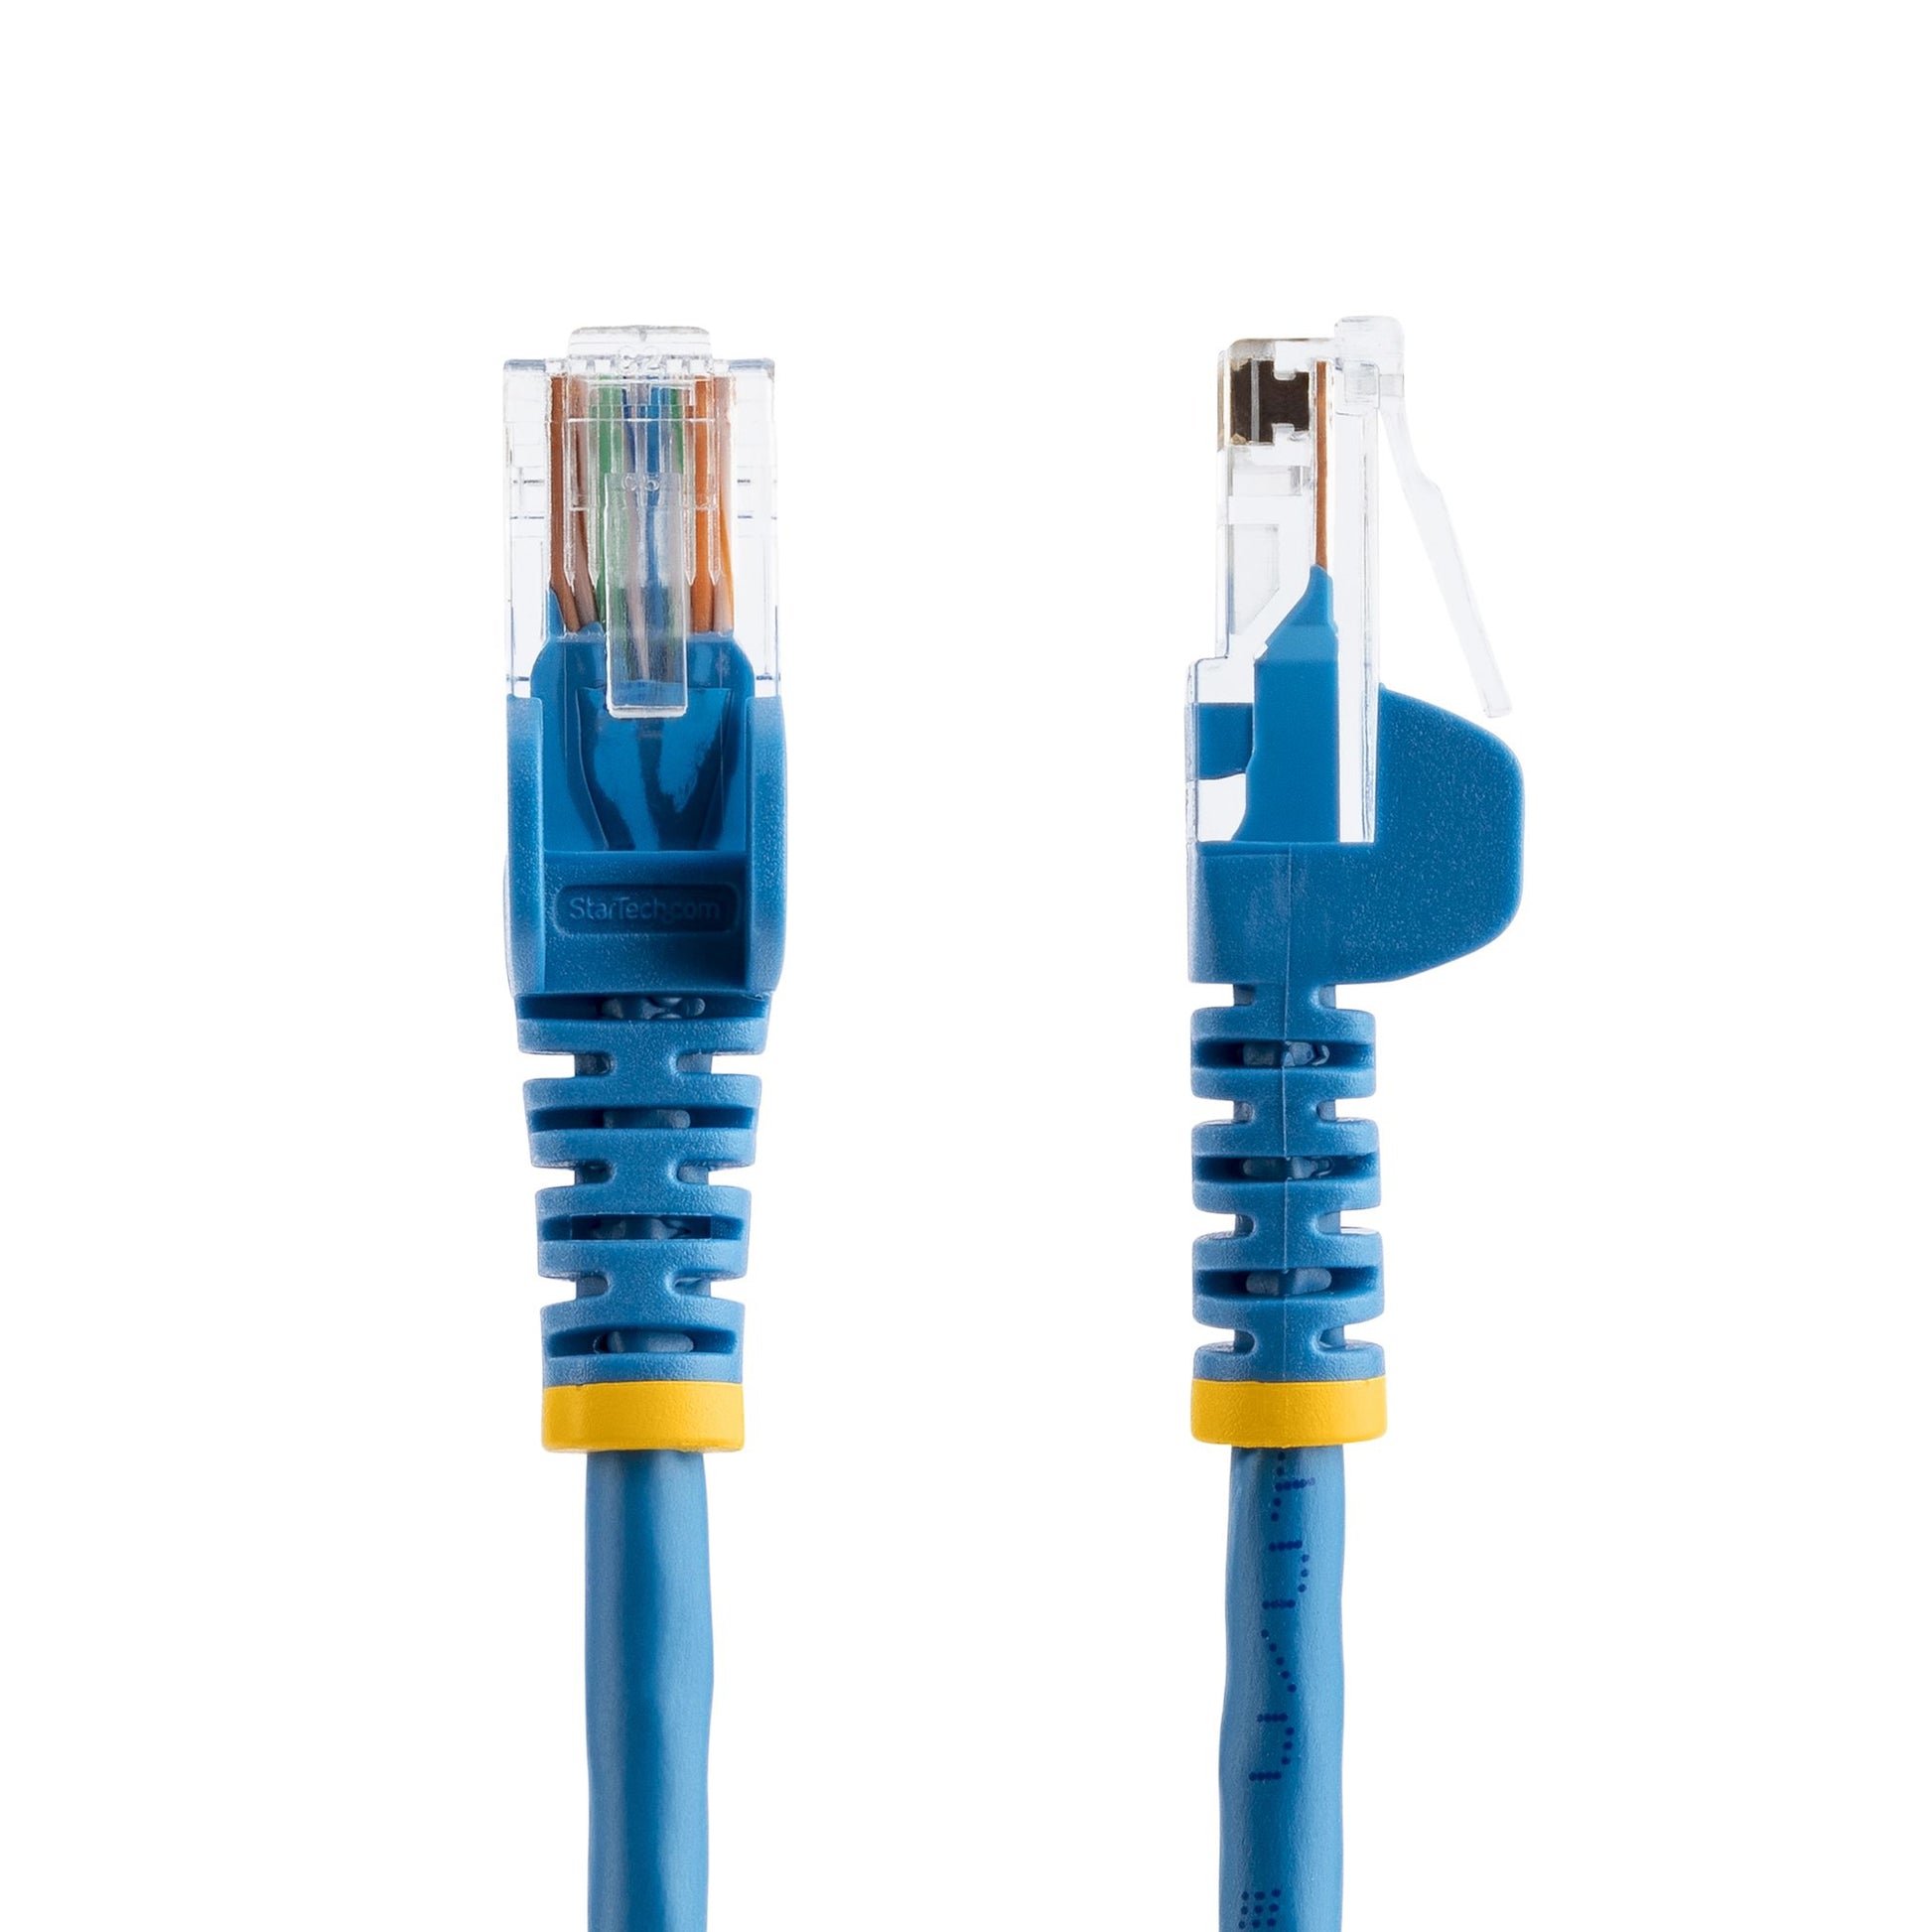 StarTech.com Cat5e Patch Cable with Snagless RJ45 Connectors - 3m, Blue-1